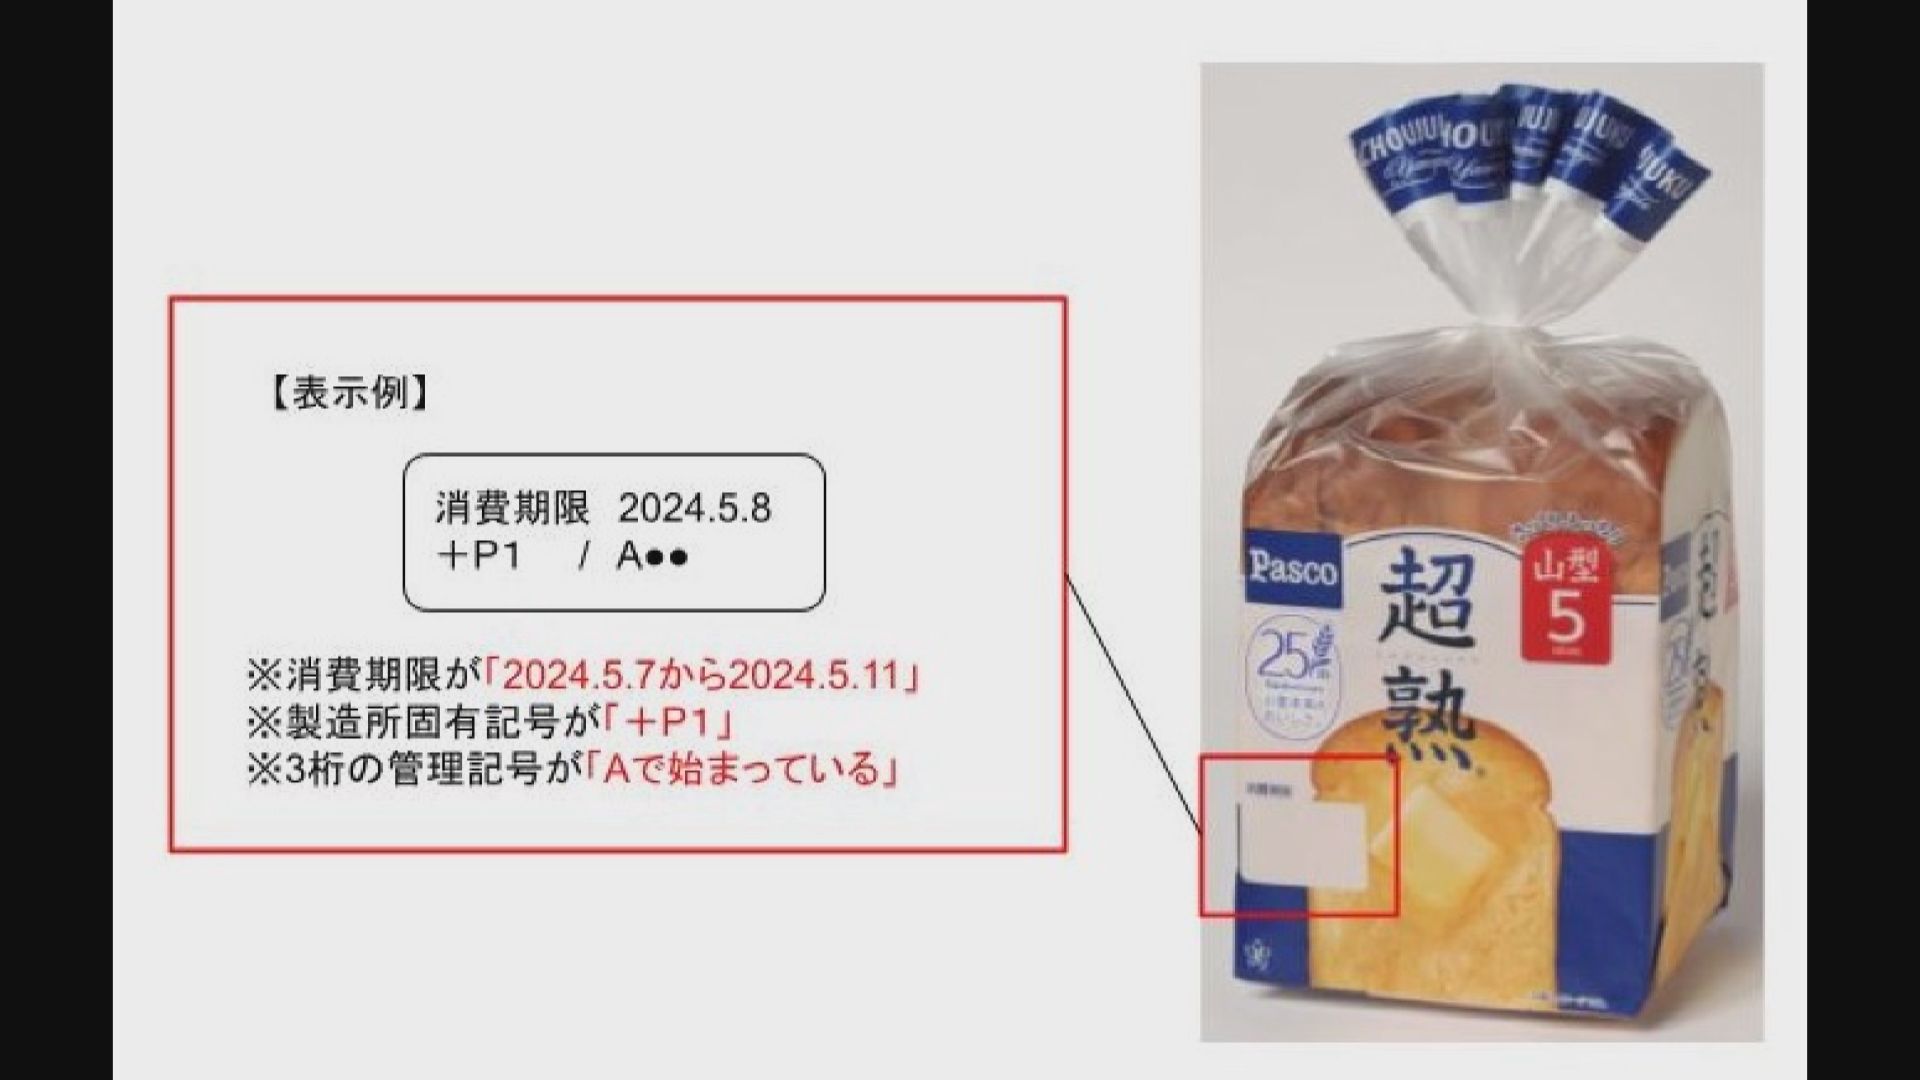 日本有麵包混入懷疑老鼠殘骸需要回收